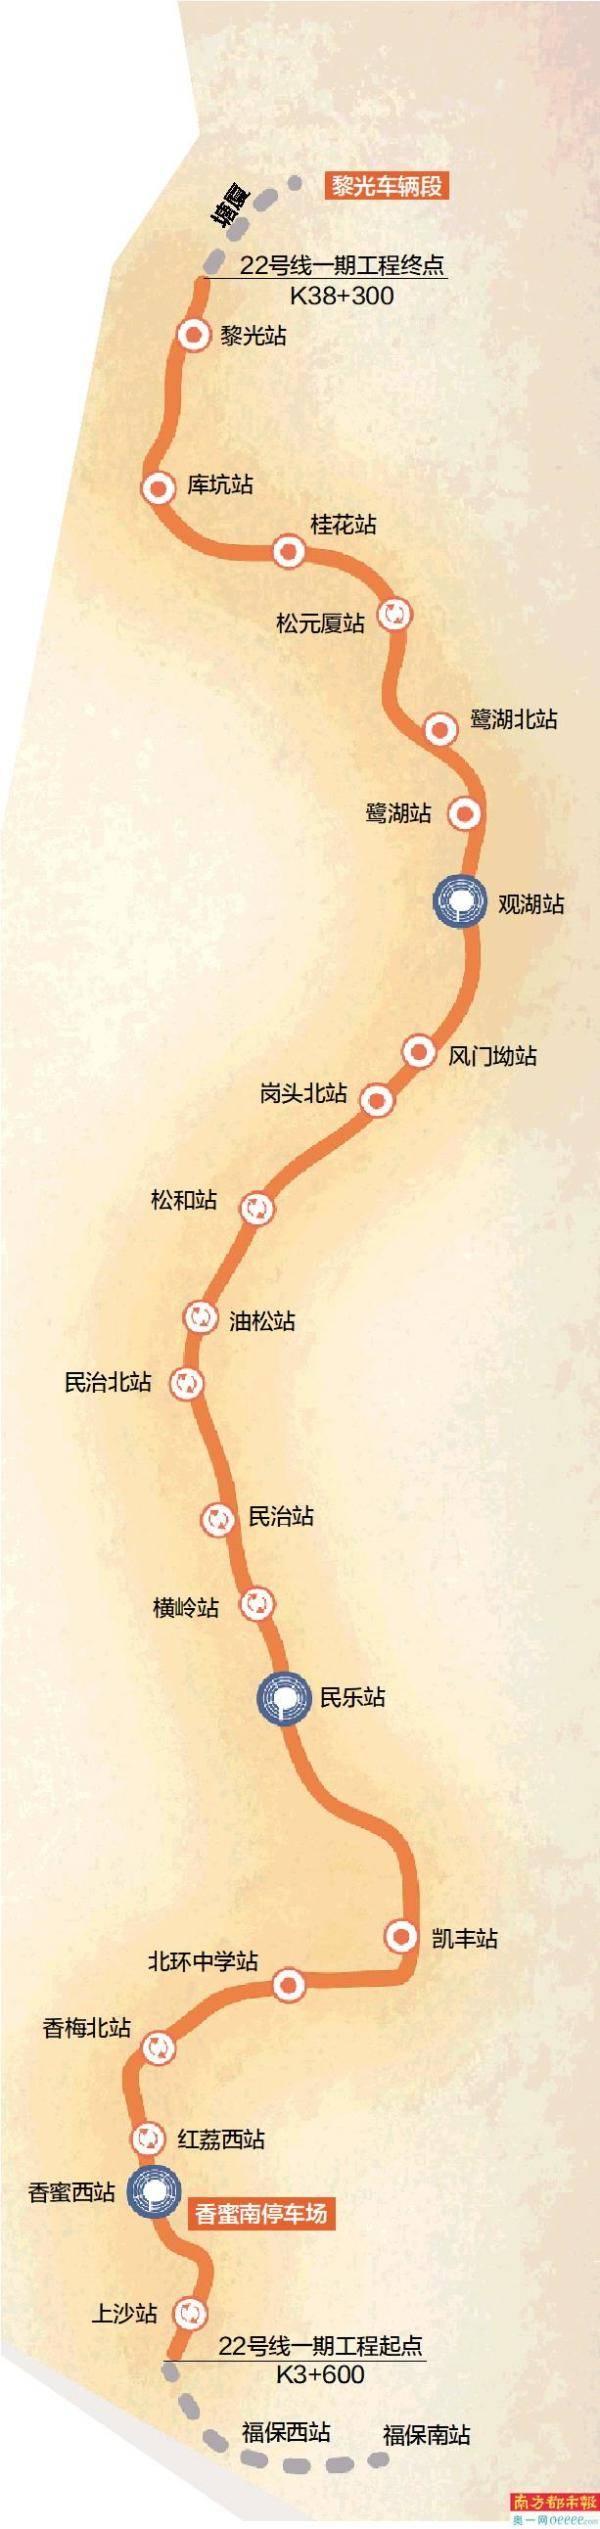 深圳地铁22号线环评二次公示南起上沙北至黎光预留延伸至东莞条件